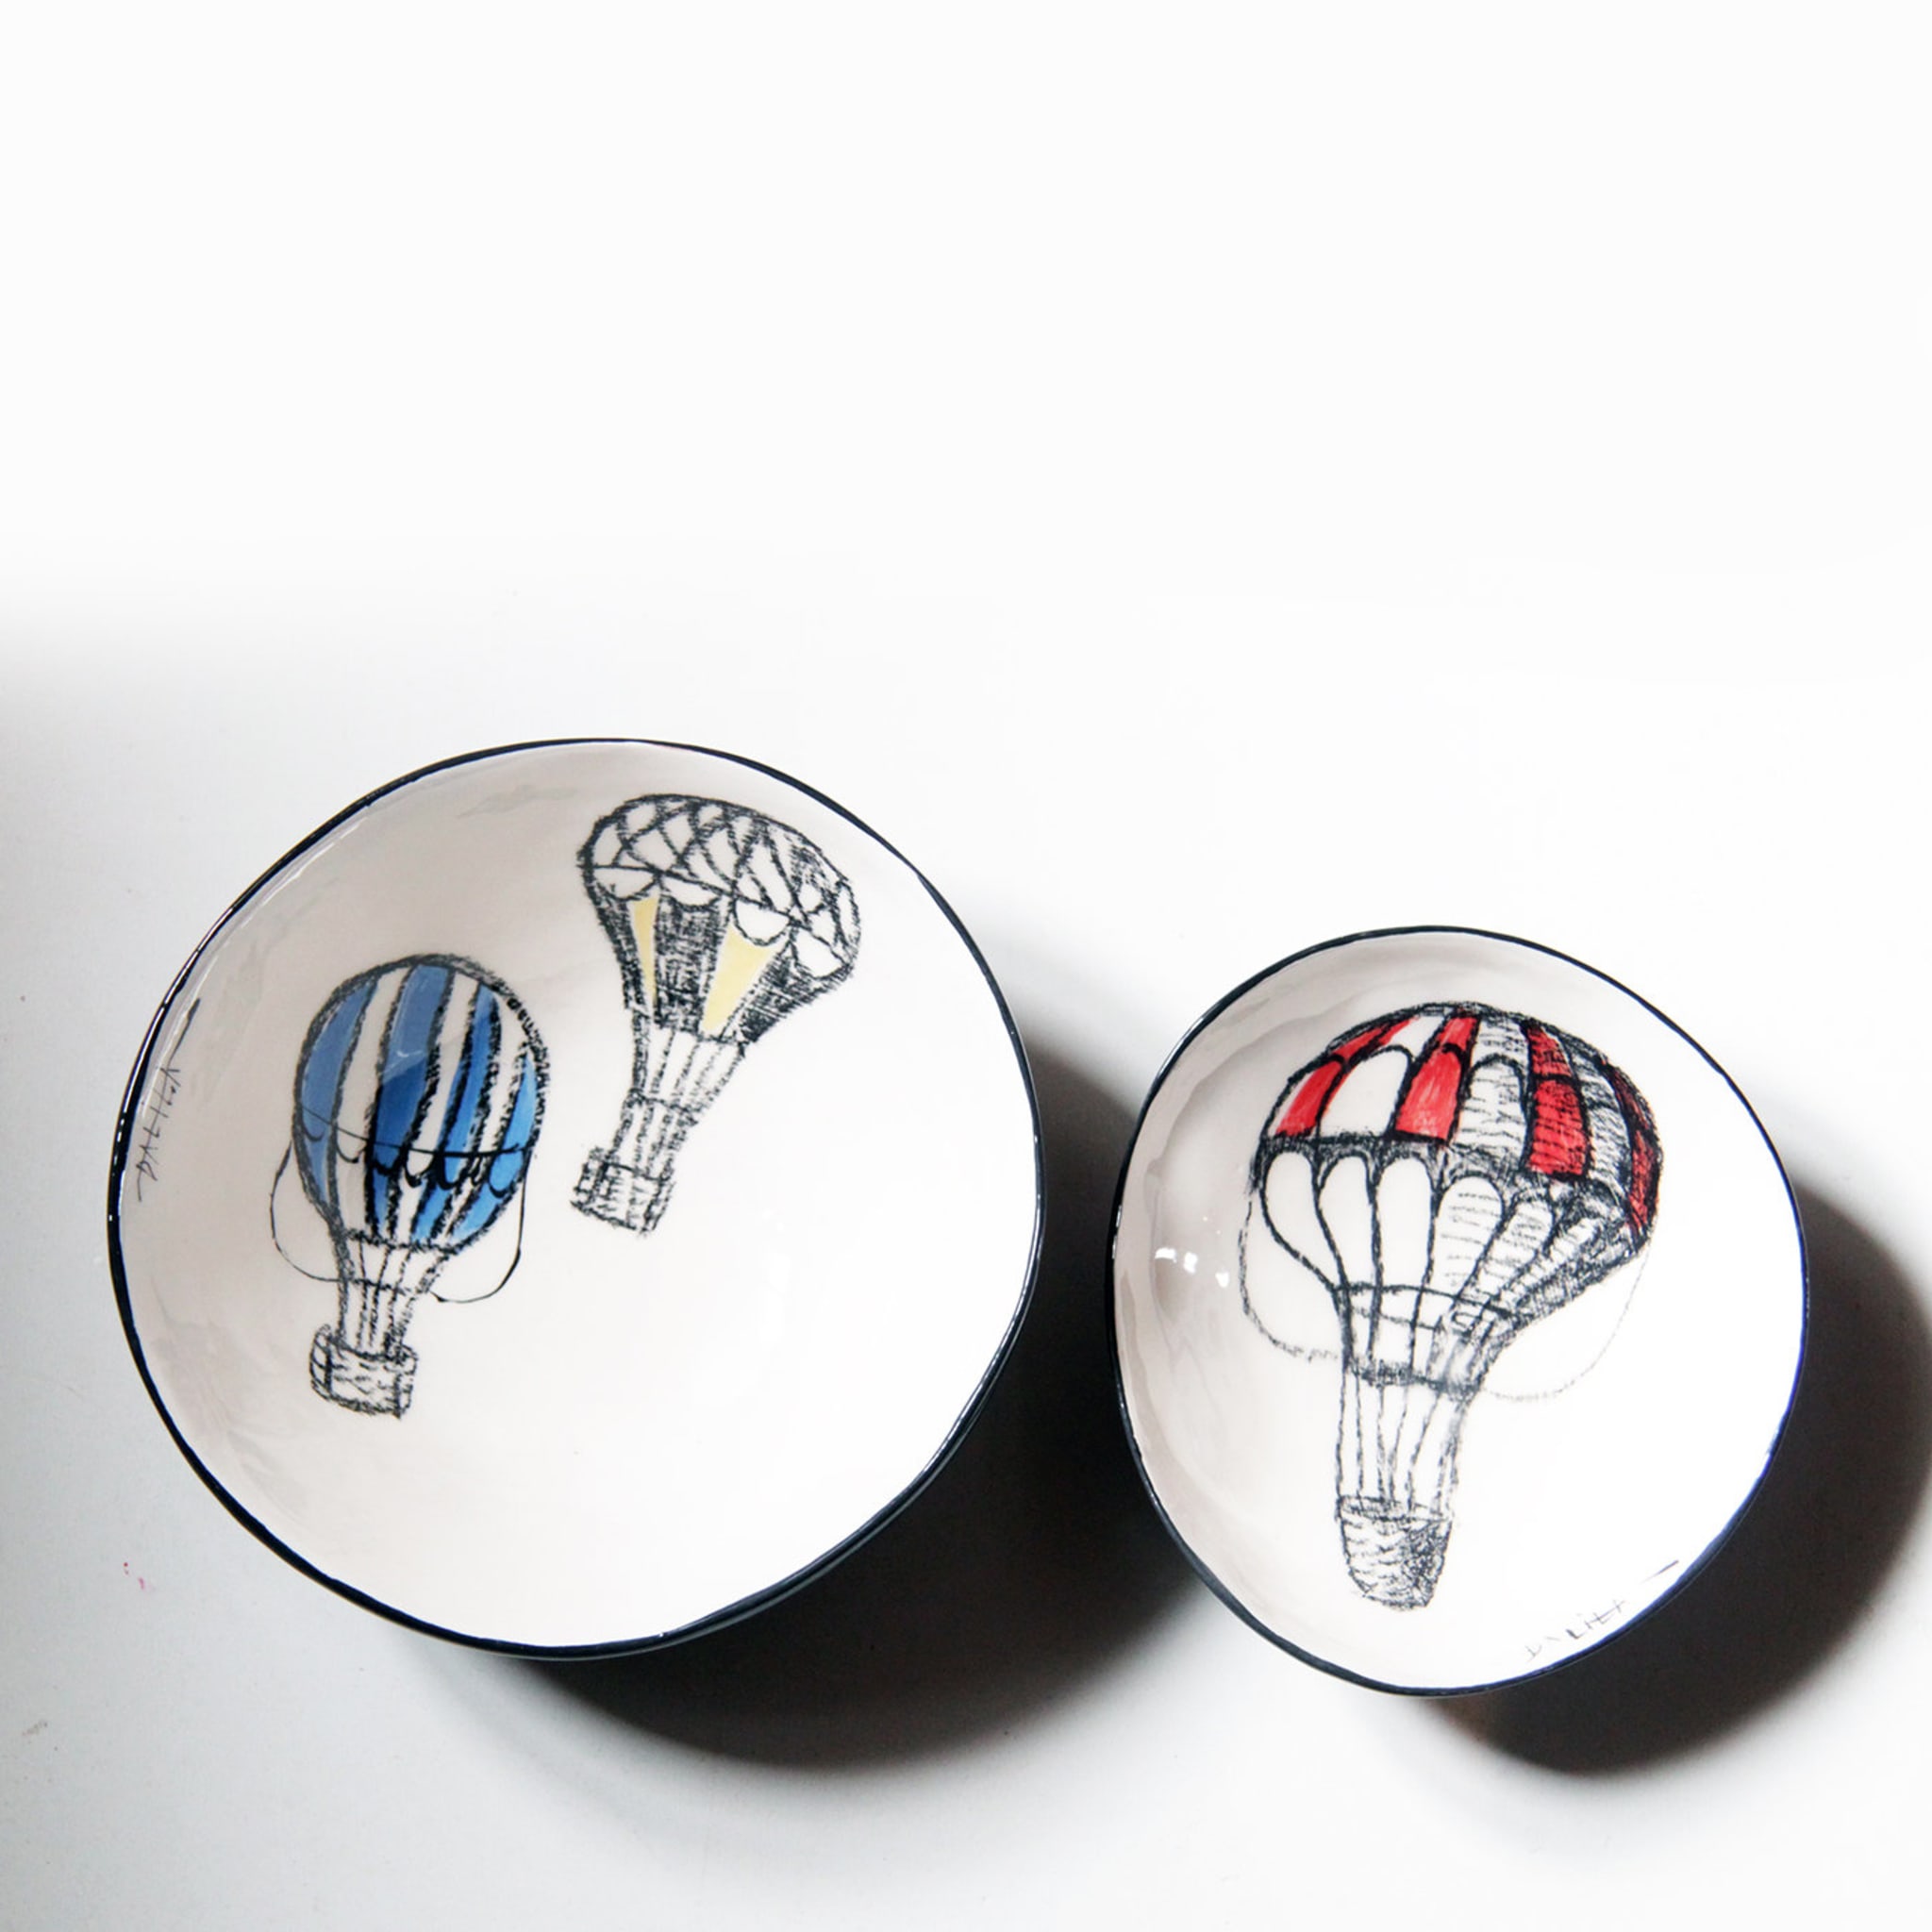 Hot-Air Balloon Bowls - Alternative view 1